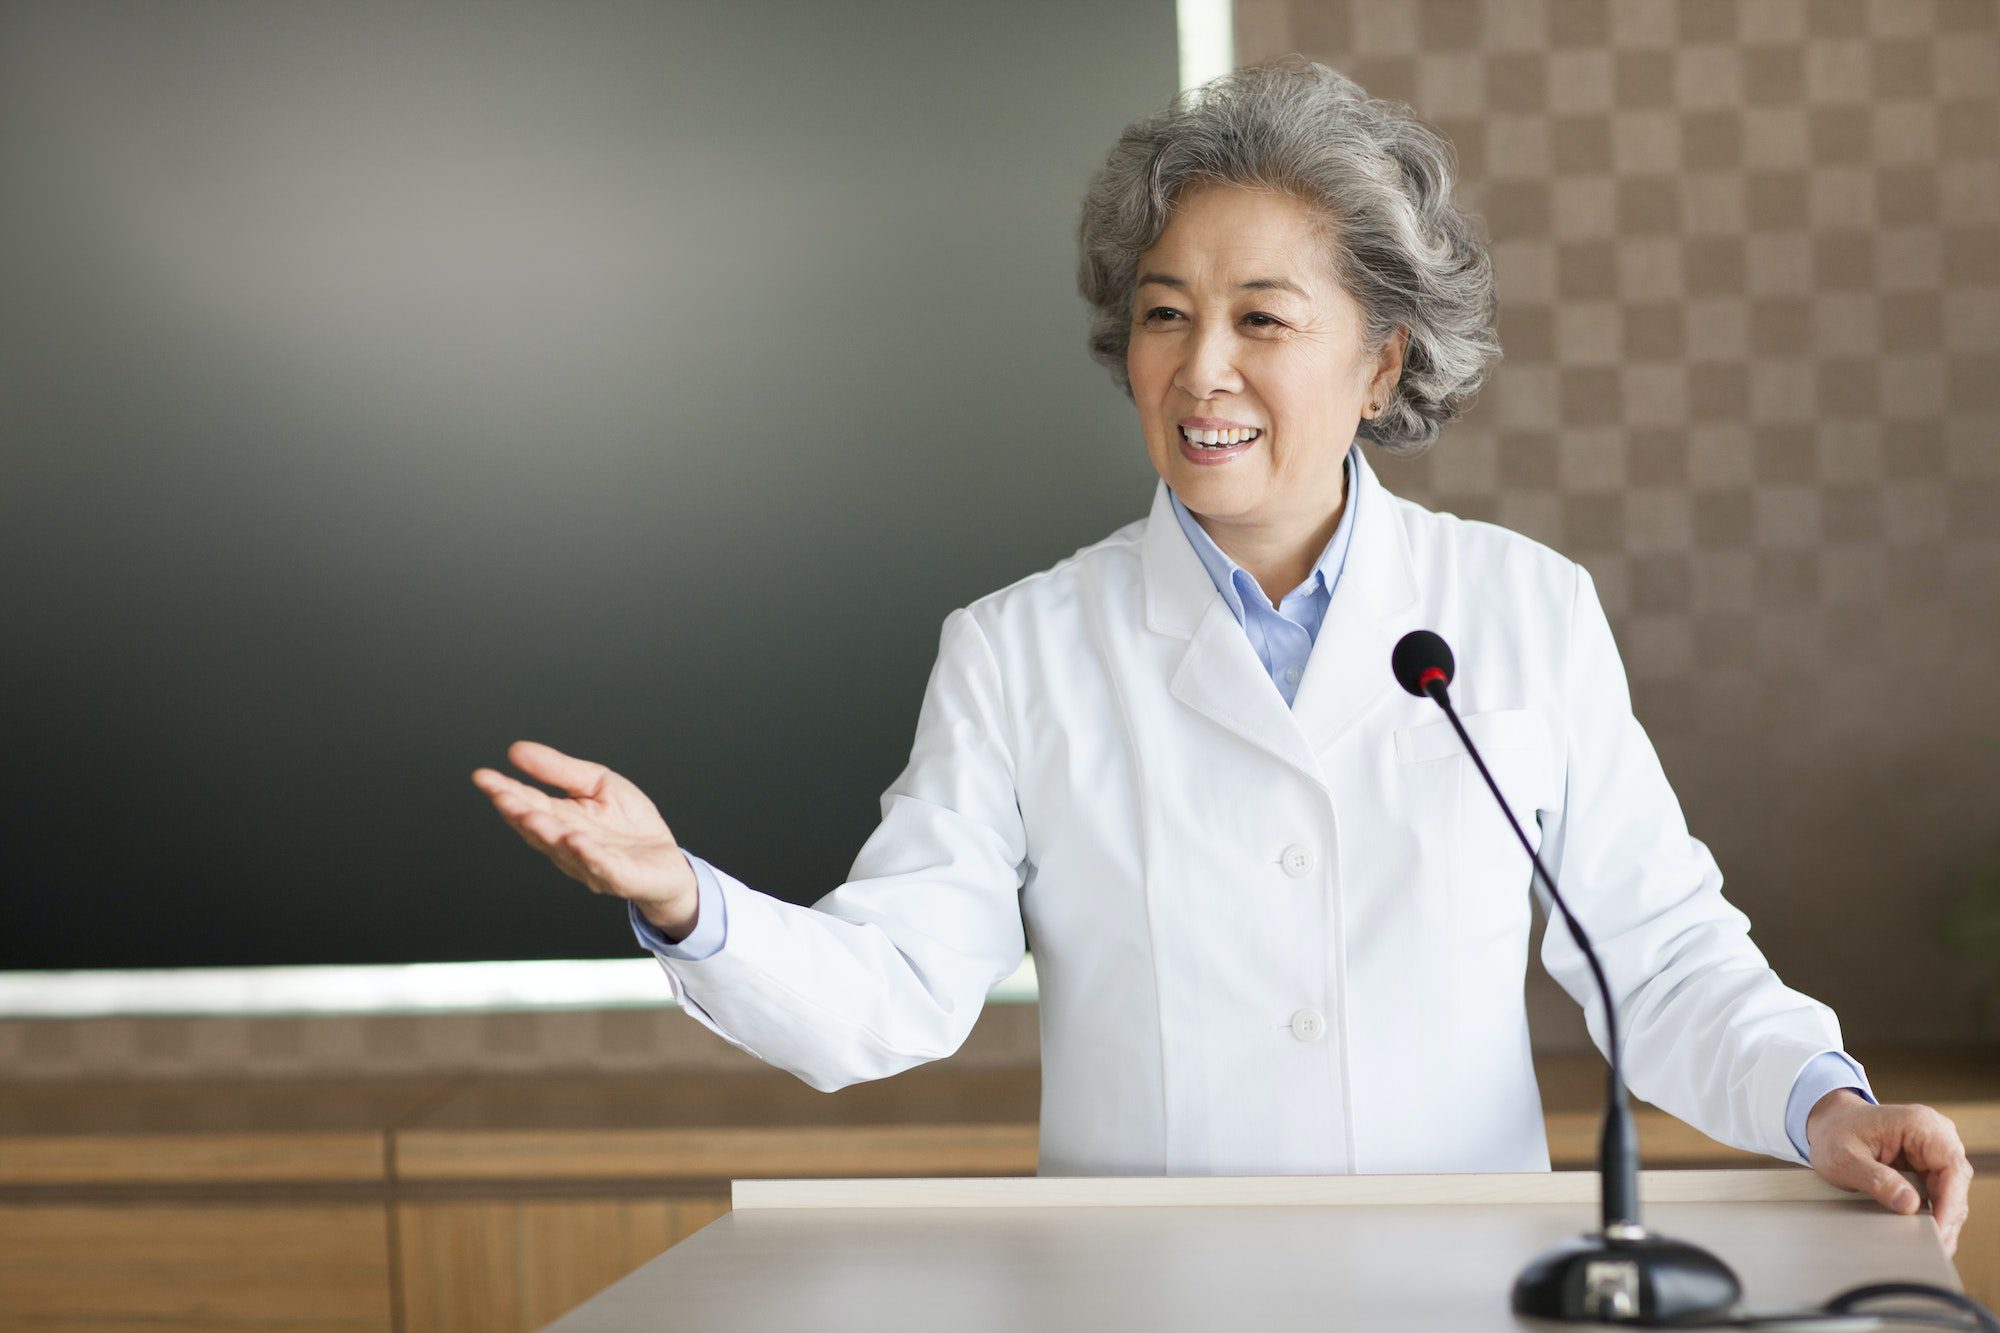 Senior female doctor giving a speech